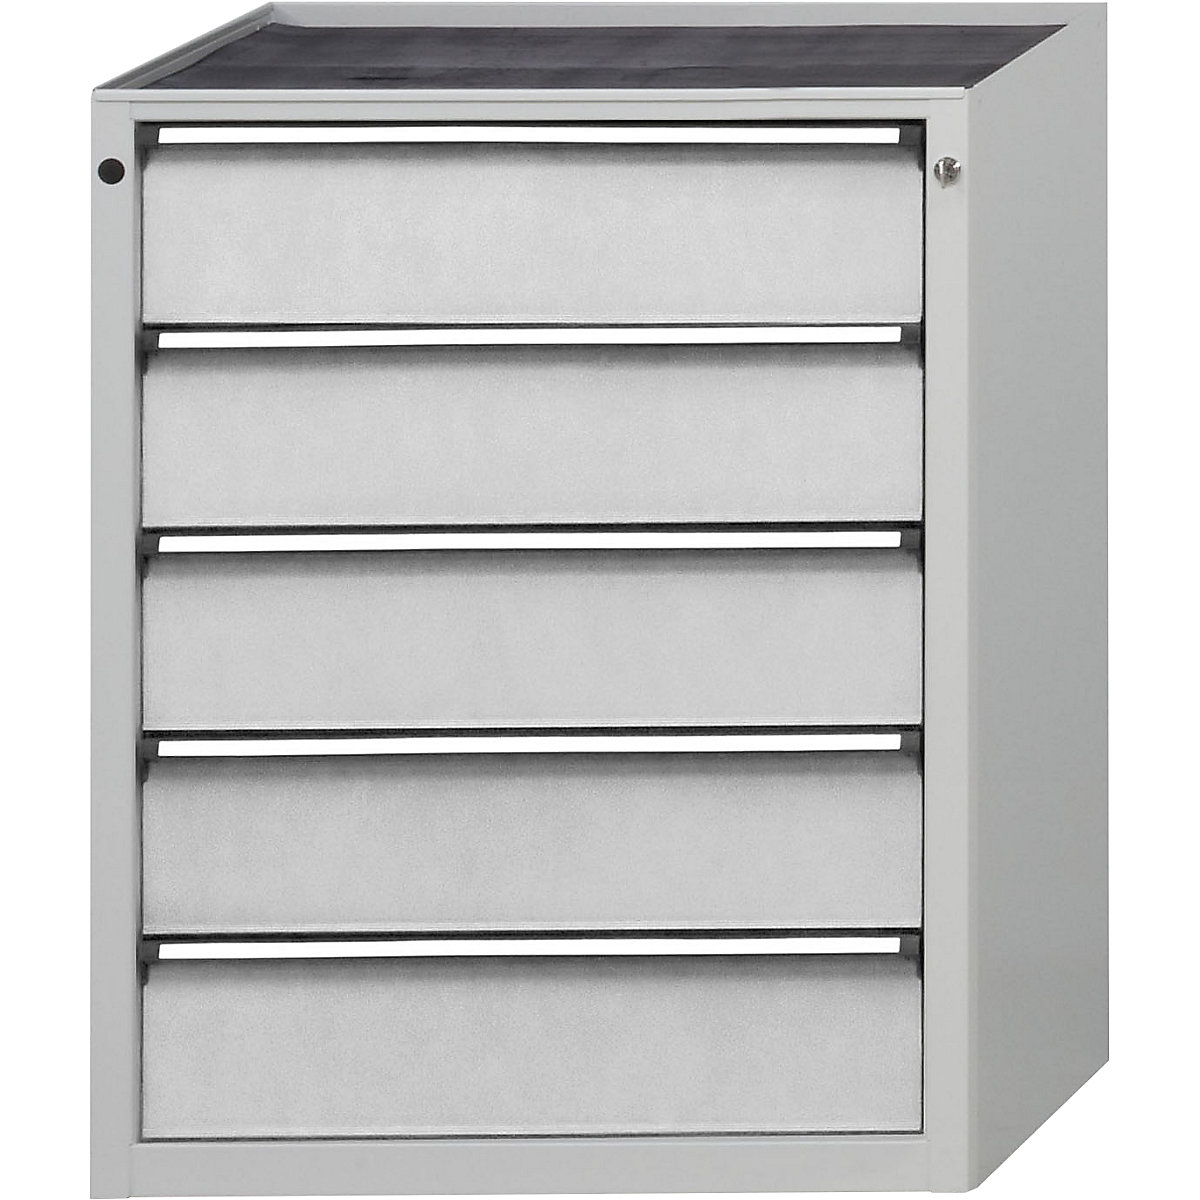 Zásuvková skříň – ANKE, š x h 760 x 675 mm, nosnost zásuvky 200 kg, 5 zásuvek, výška 980 mm, čelo světle šedé